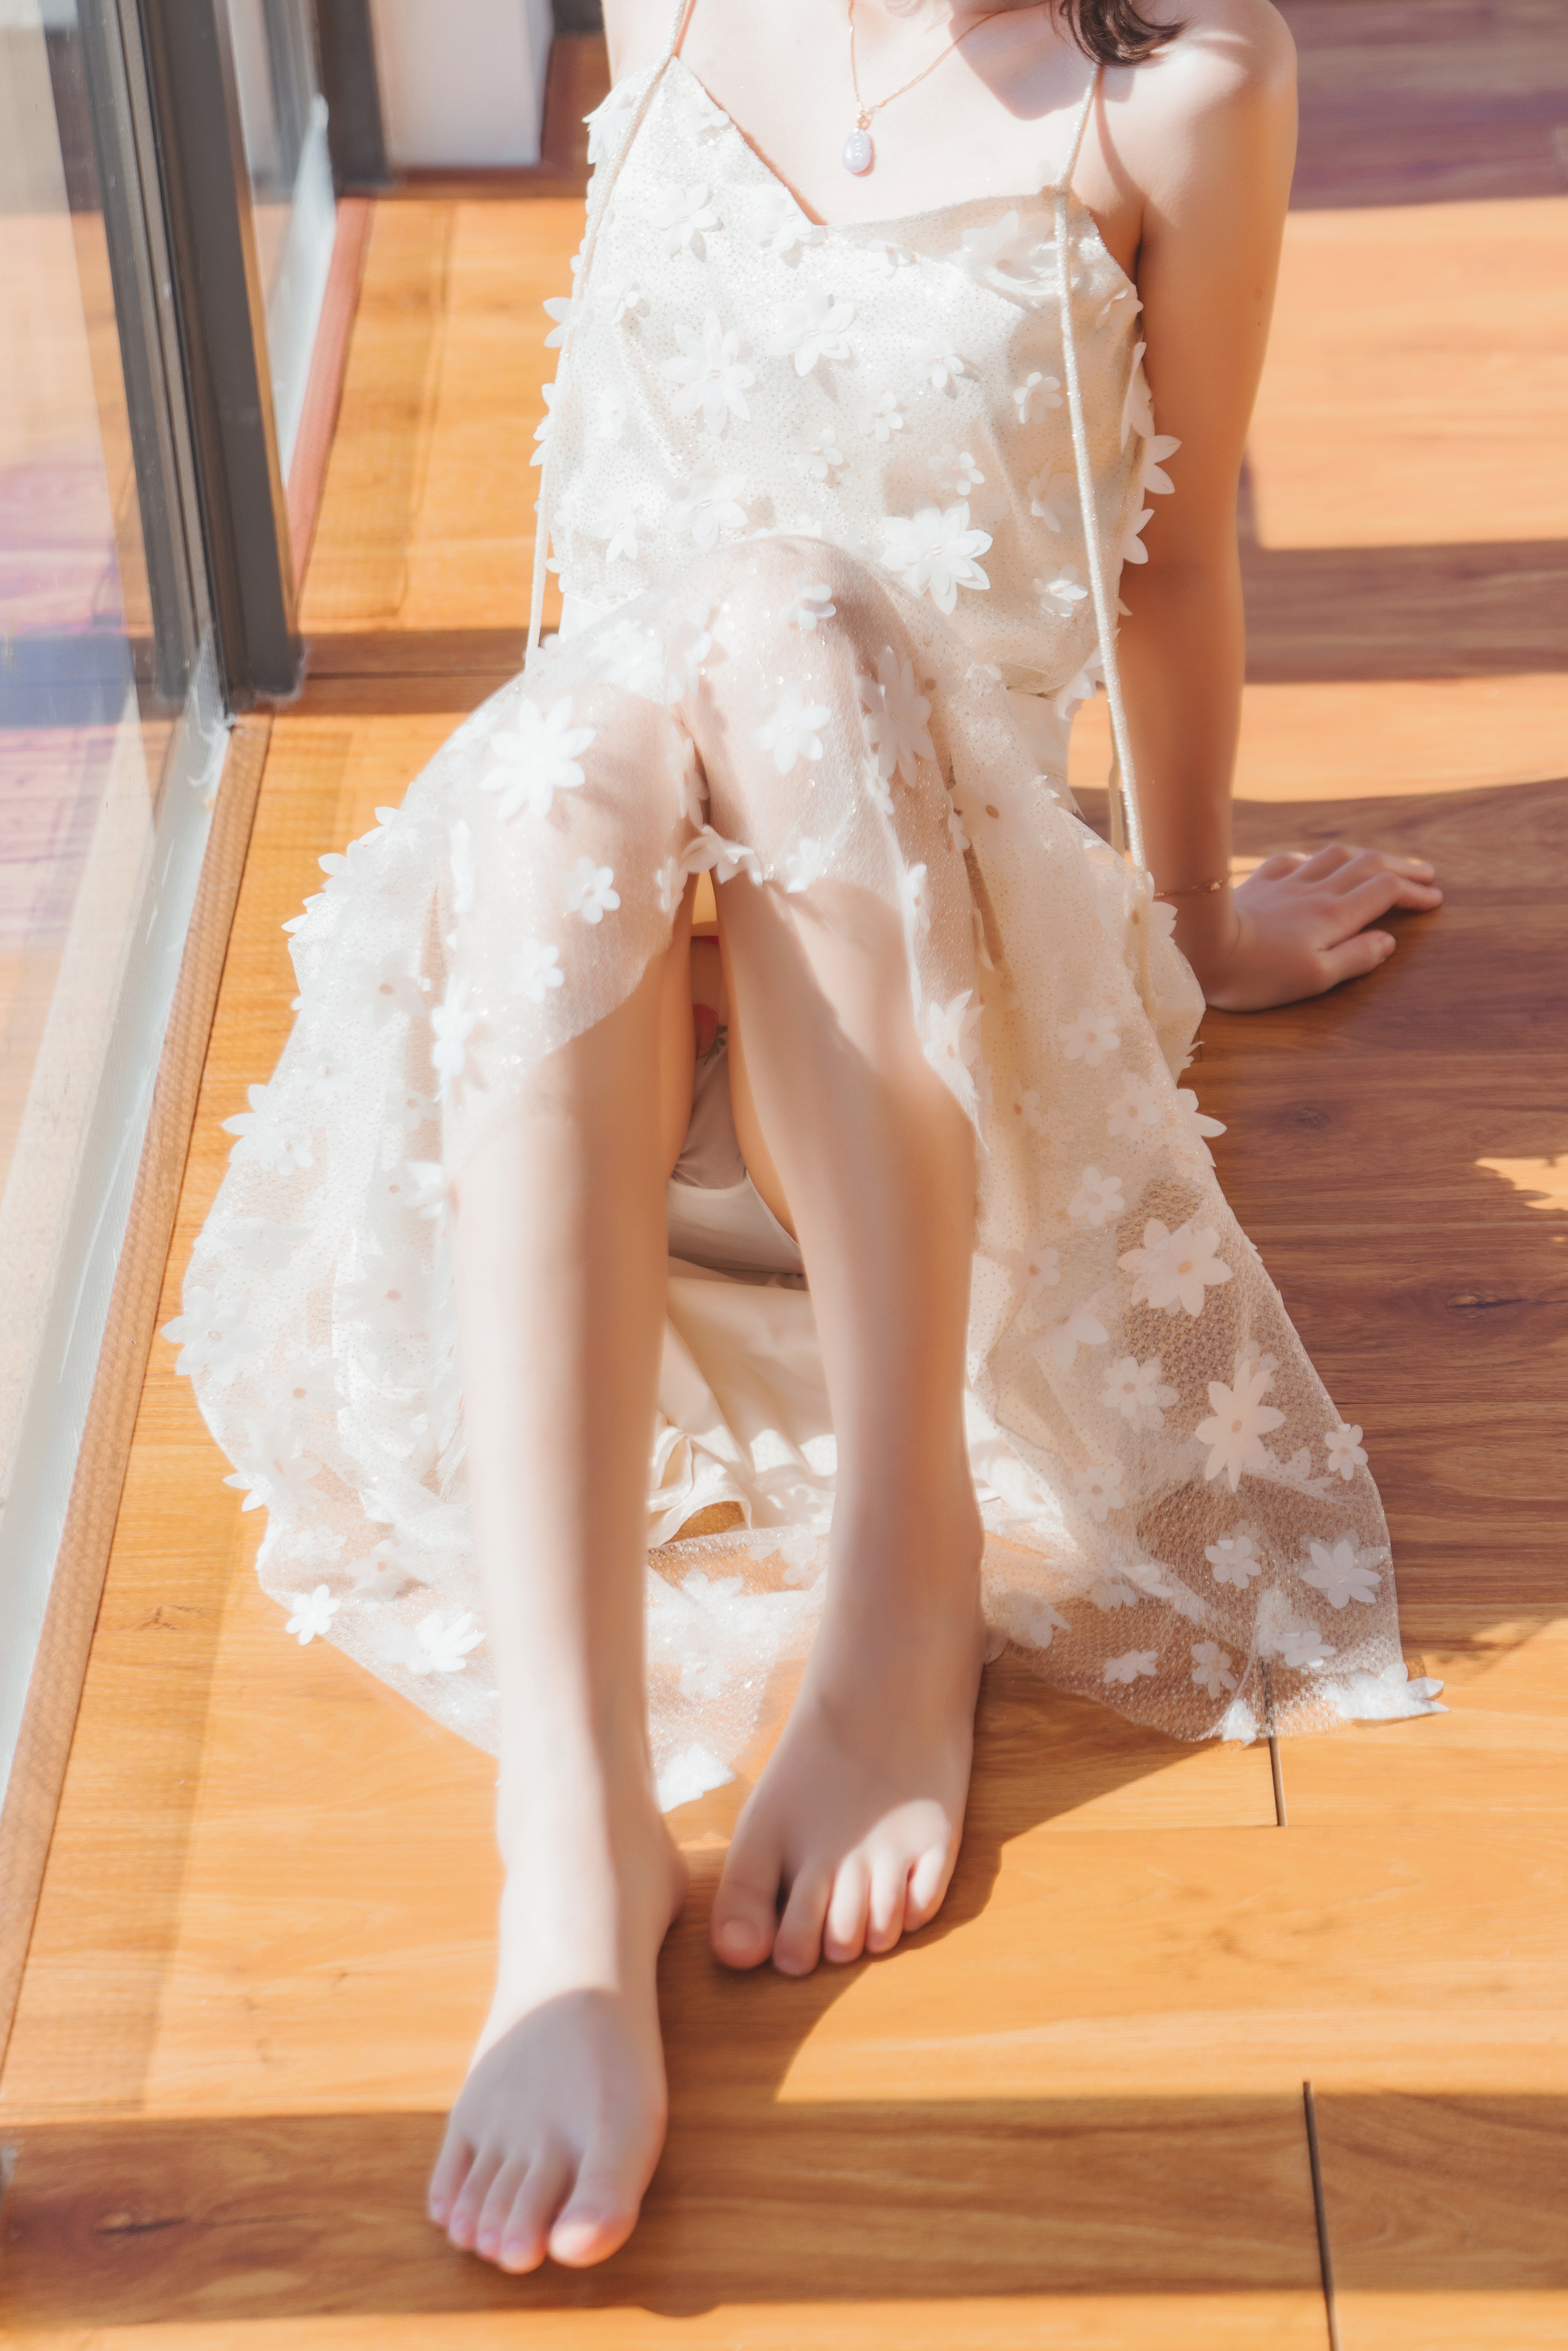 Asian White Dress Sunlight On The Floor Feet 3906x5856